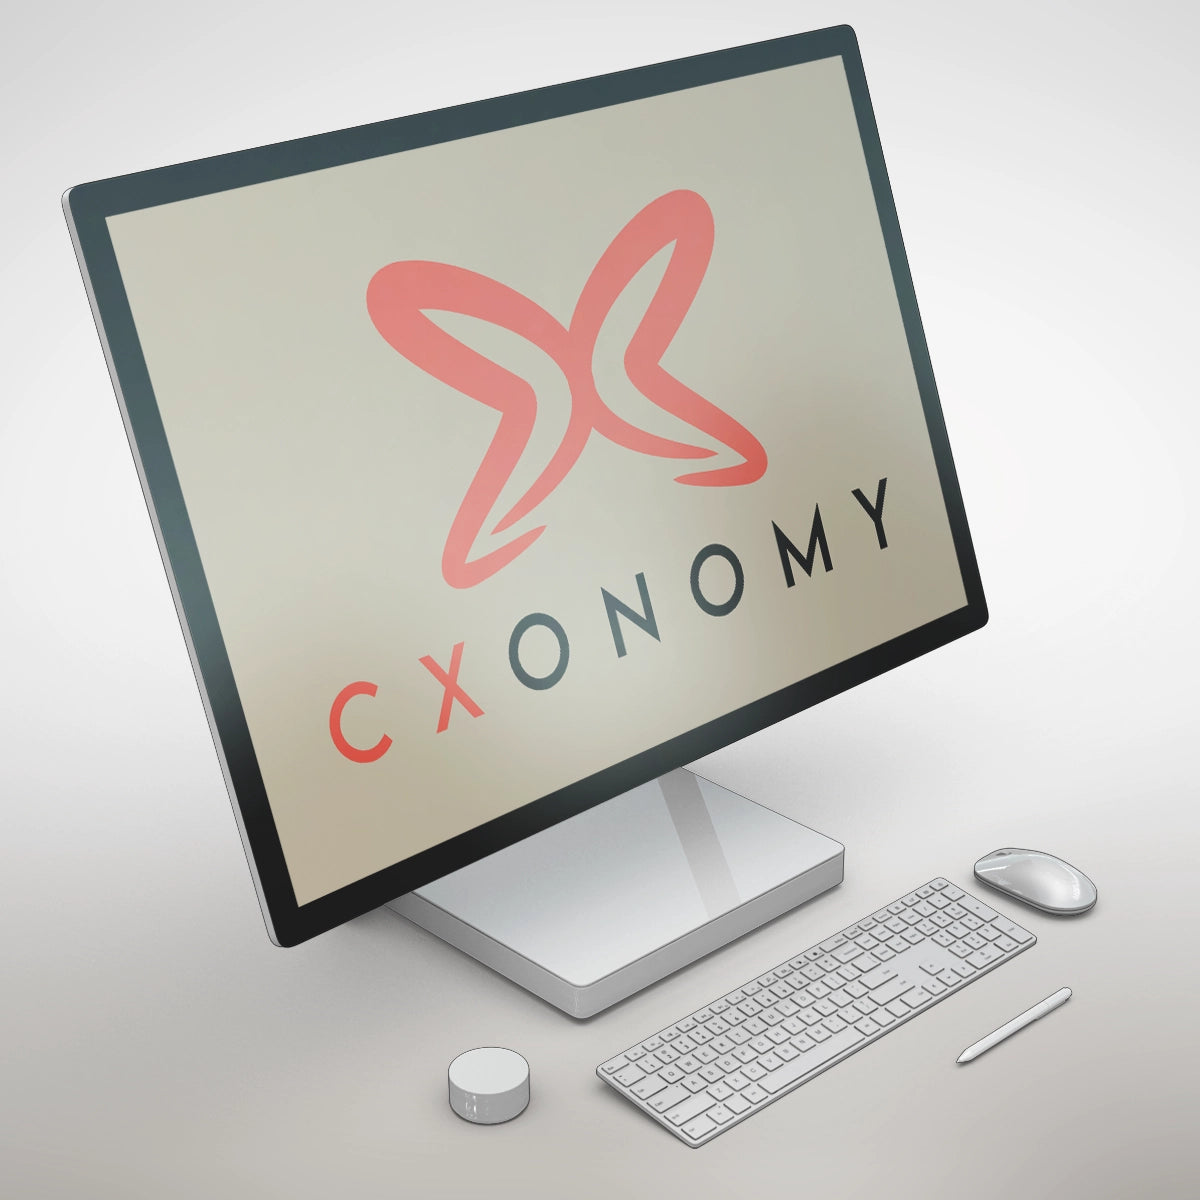 cxonomy.com